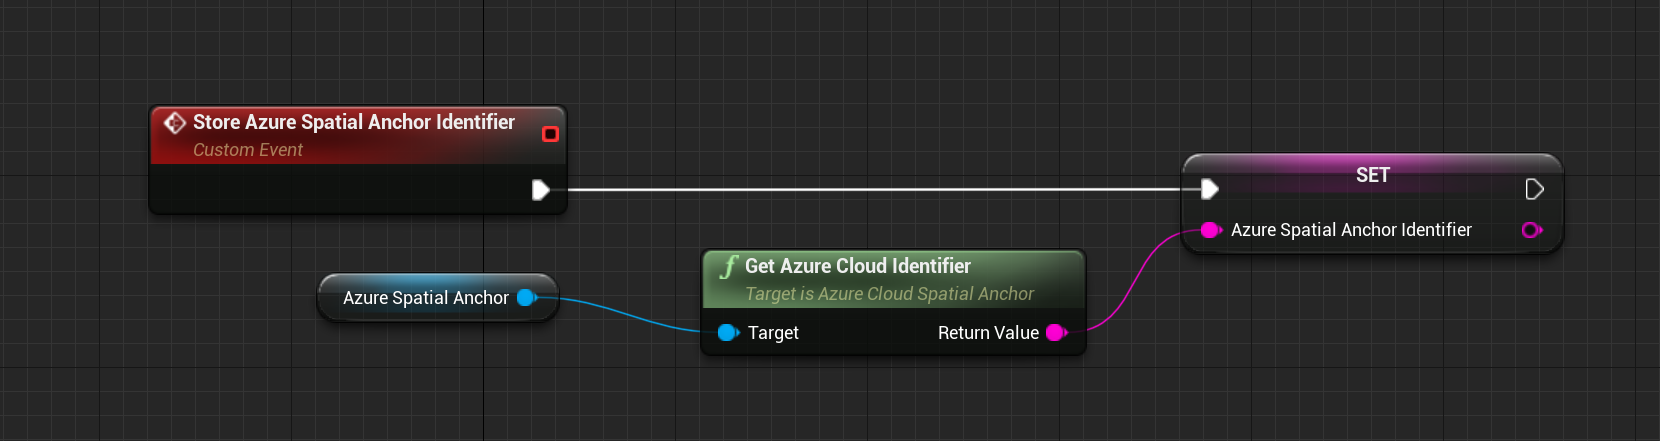 Progetto dell'evento personalizzato di archiviazione dell'identificatore dell'ancoraggio nello spazio di Azure con la funzione per ottenere l'identificatore cloud di Azure